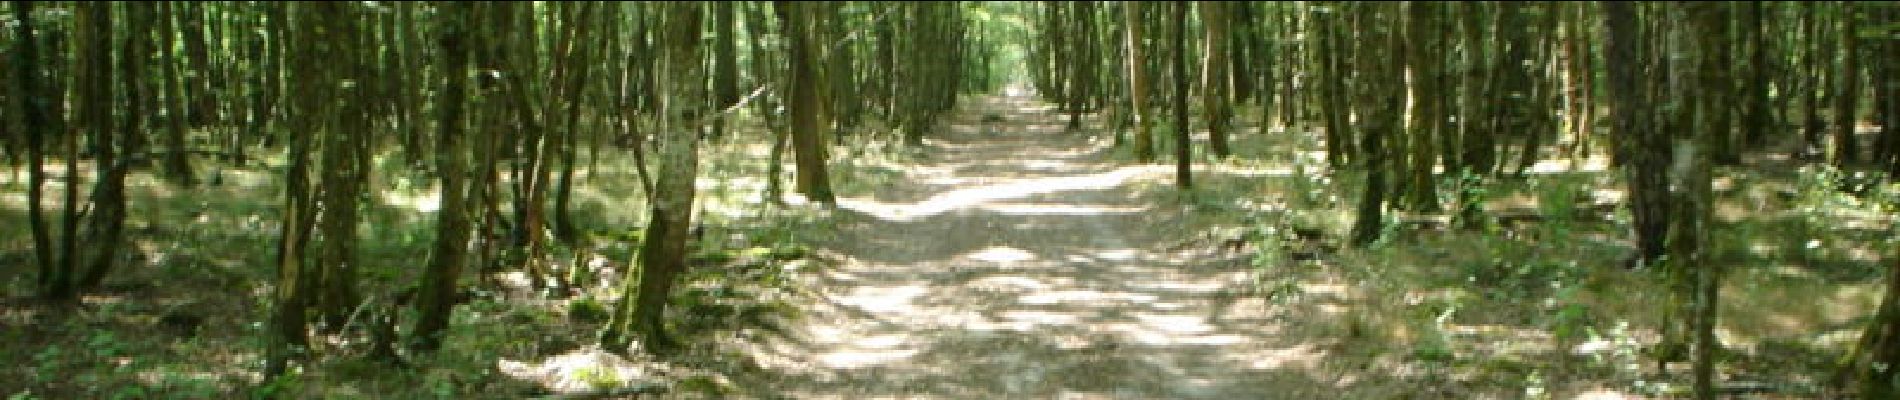 Randonnée Course à pied Chilleurs-aux-Bois - Étang de la vallée du Diable - Forêt d'Orléans - Photo